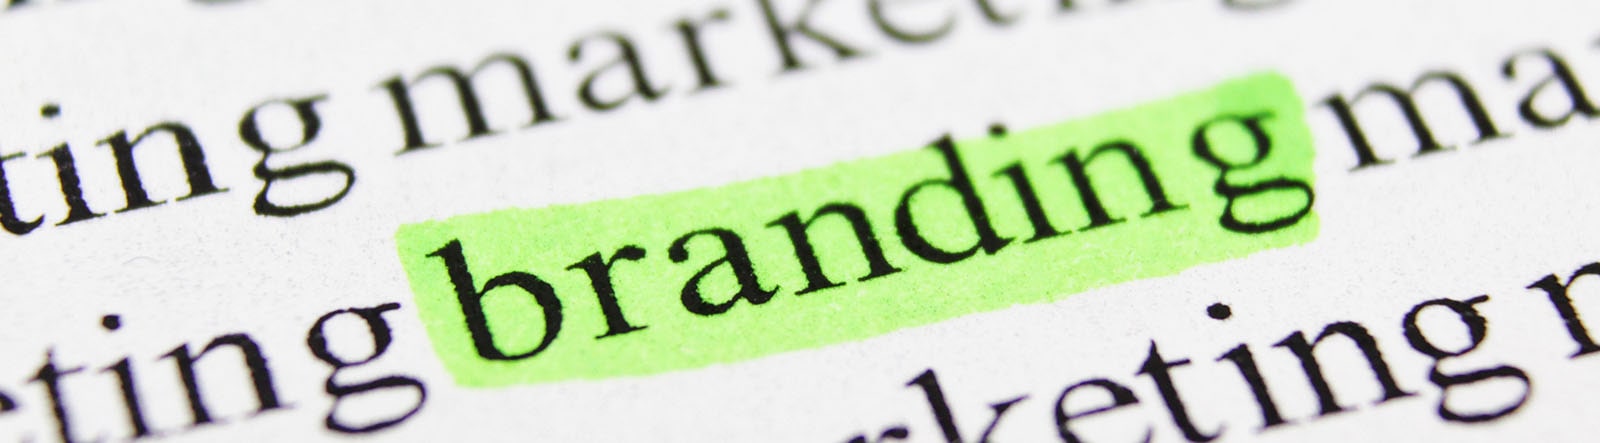 Qual a importância do Branding para uma empresa?